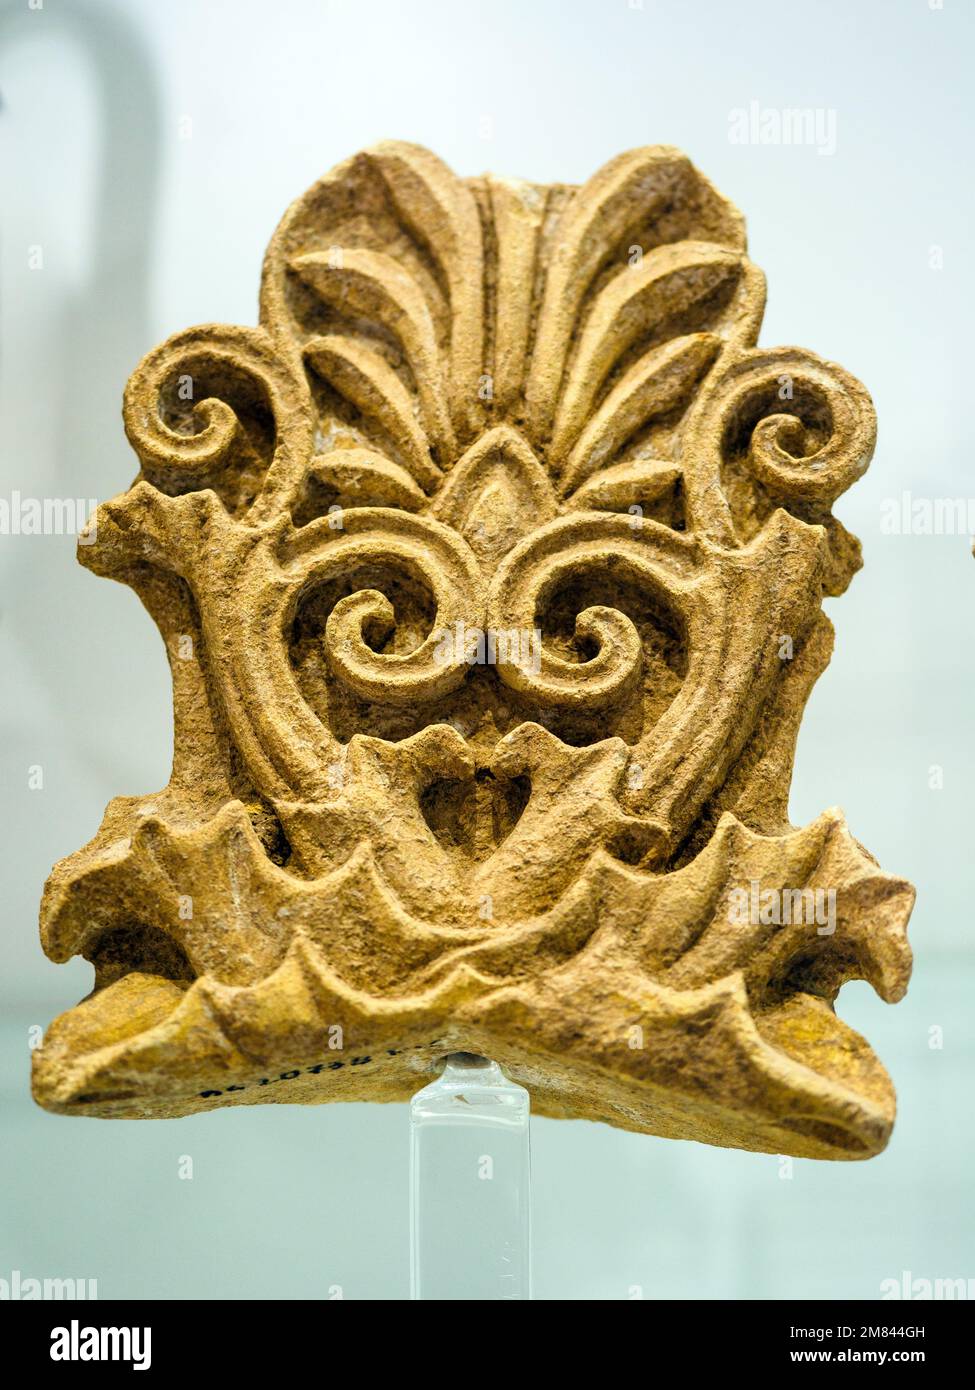 Akroteriale Palmetten in weichem Stein, die den Deckel eines Sarkophages dekorierten - Archäologisches Museum 'Pietro Griffo' von Agrigento - Sizilien, Italien Stockfoto